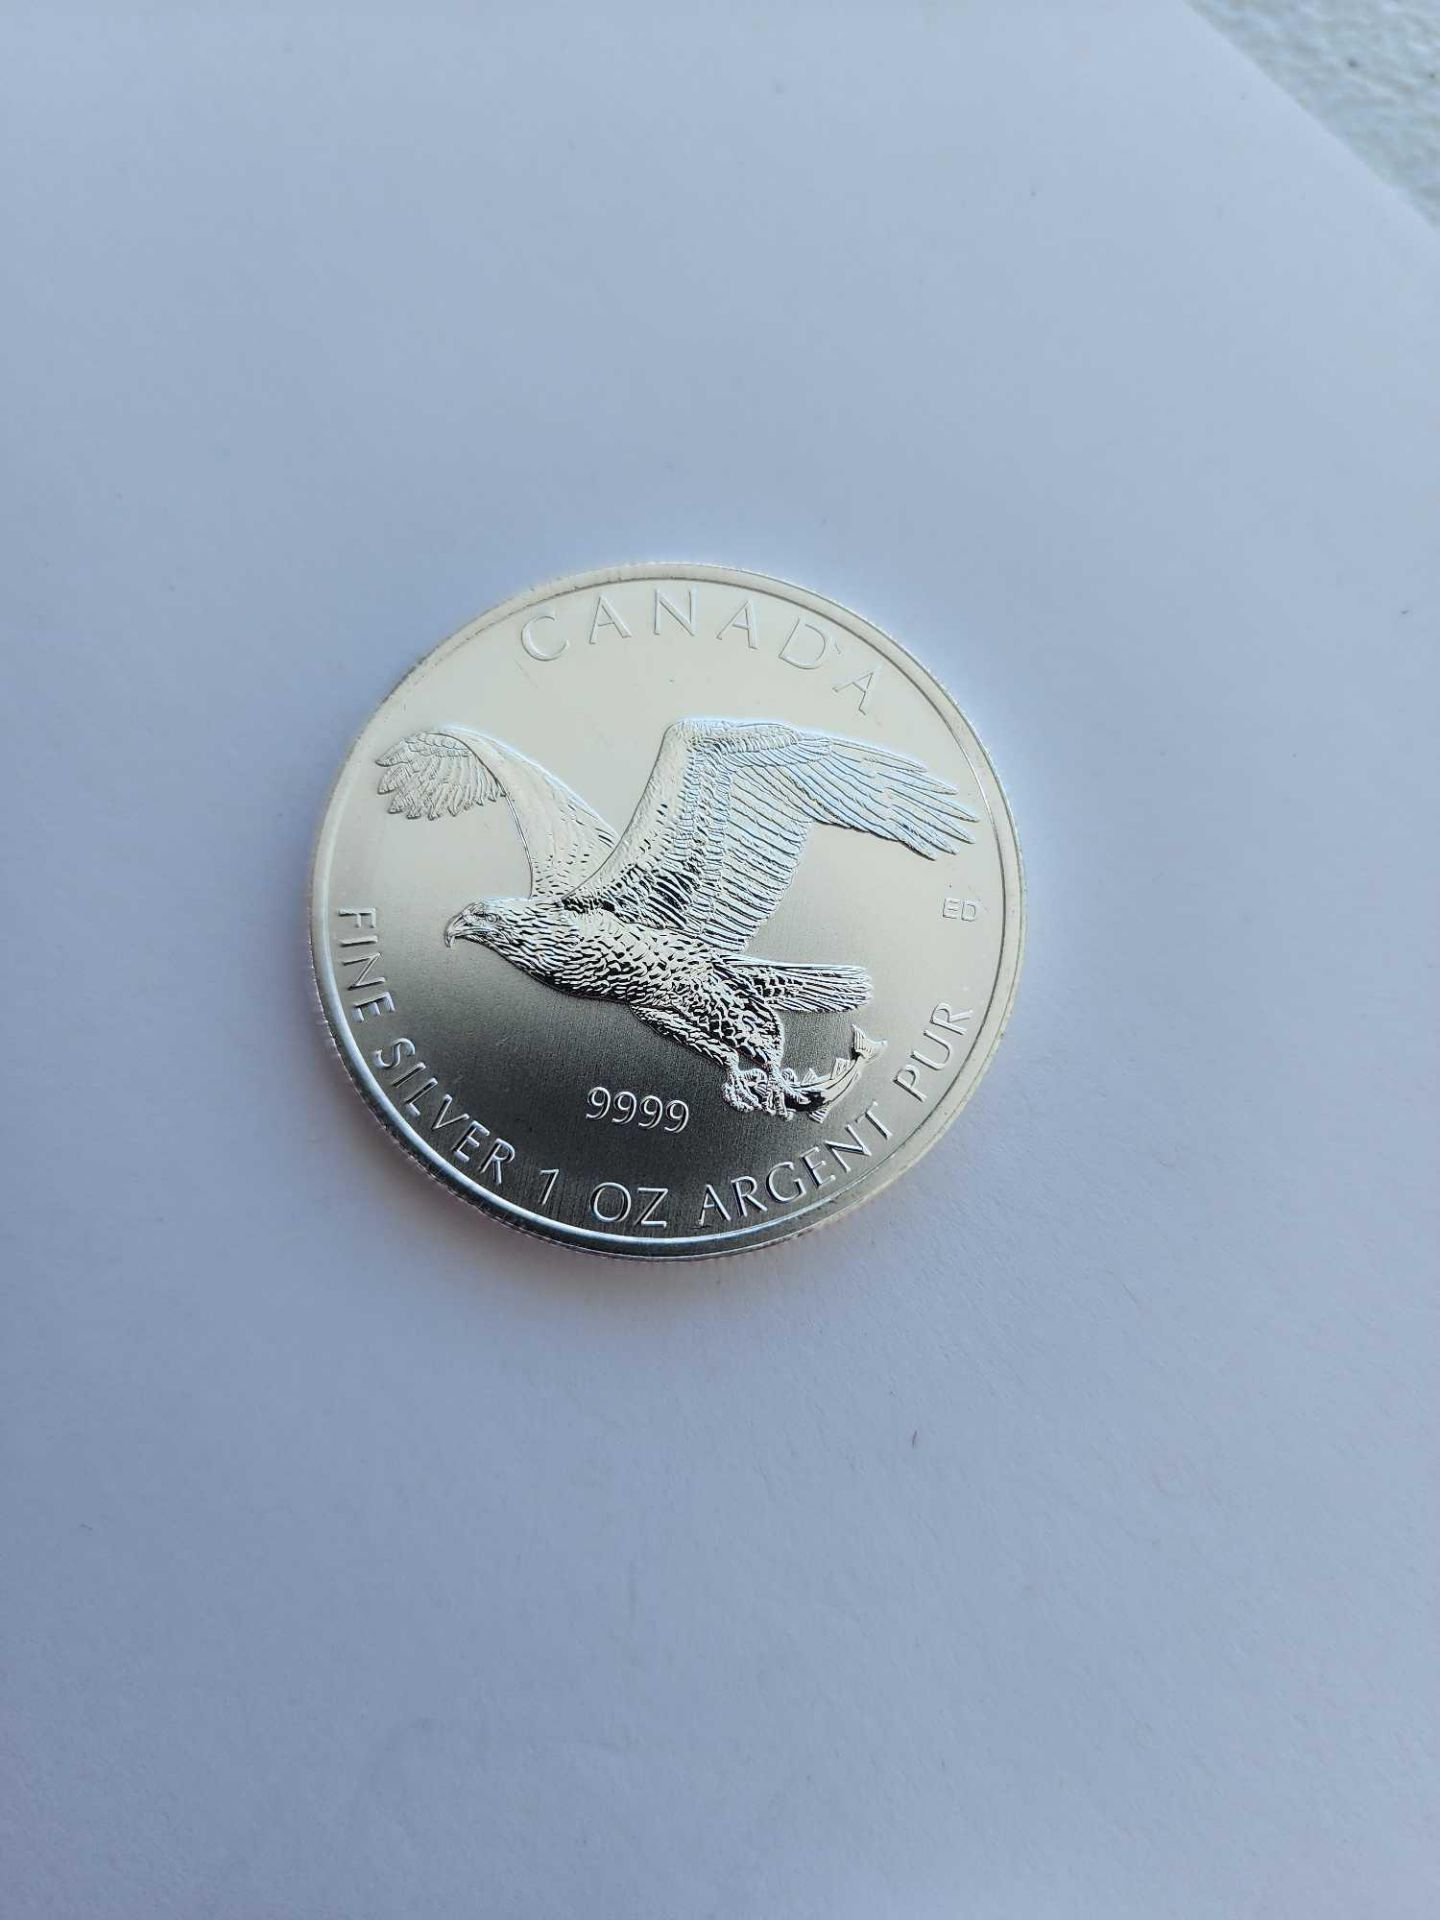 3 1 oz Silver canada birds silver coins - Image 3 of 5